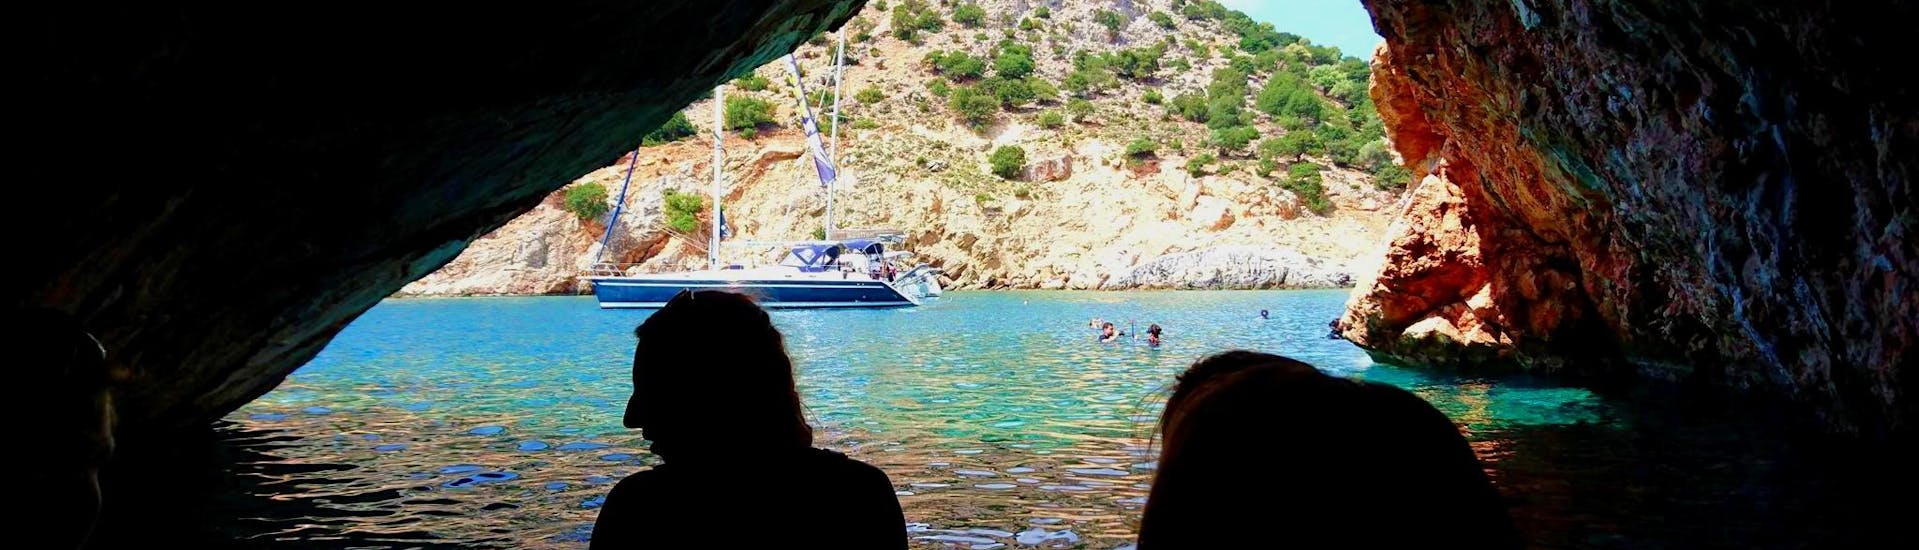 Während der ganztägigen Segeltour zur Rina-Höhle und nach Koufonissi mit Naxos Catamaran erkunden die Teilnehmer das Innere der Höhle.